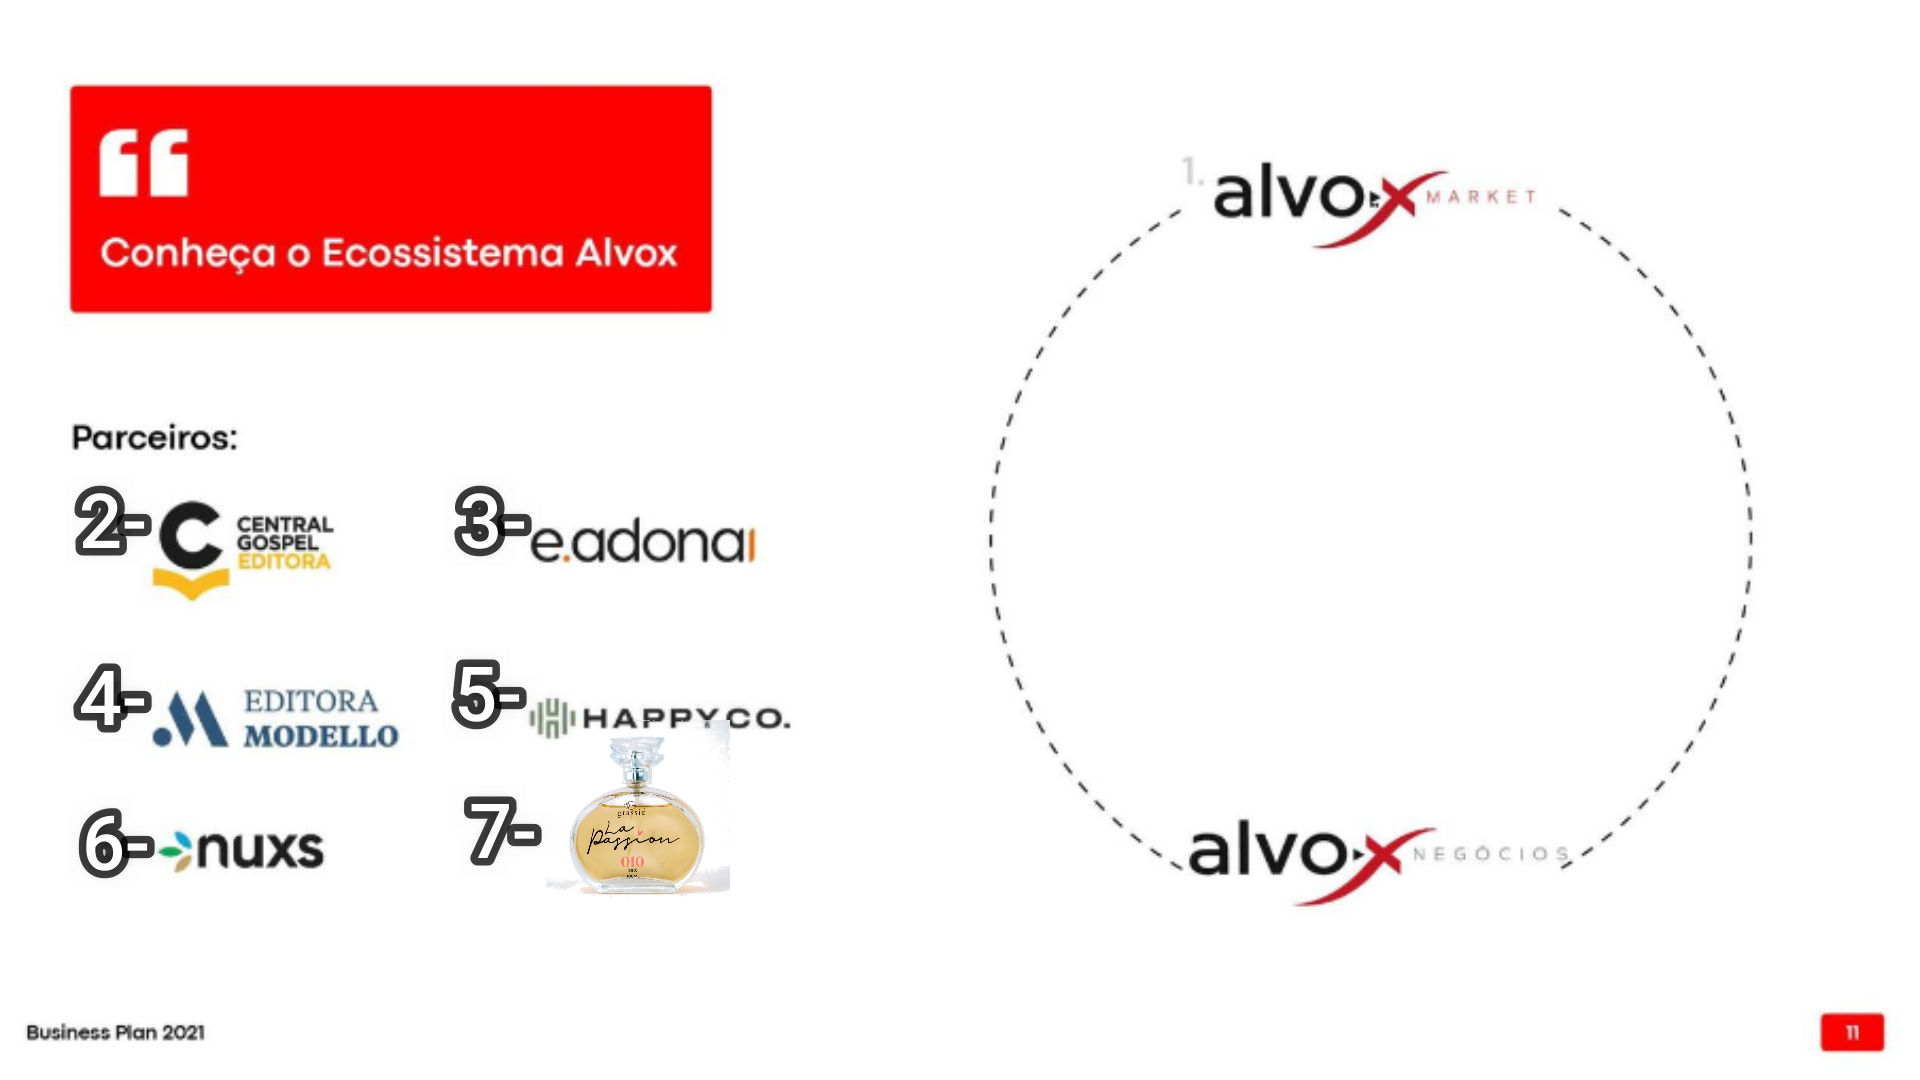 Ecosistema da Alvox Negócios